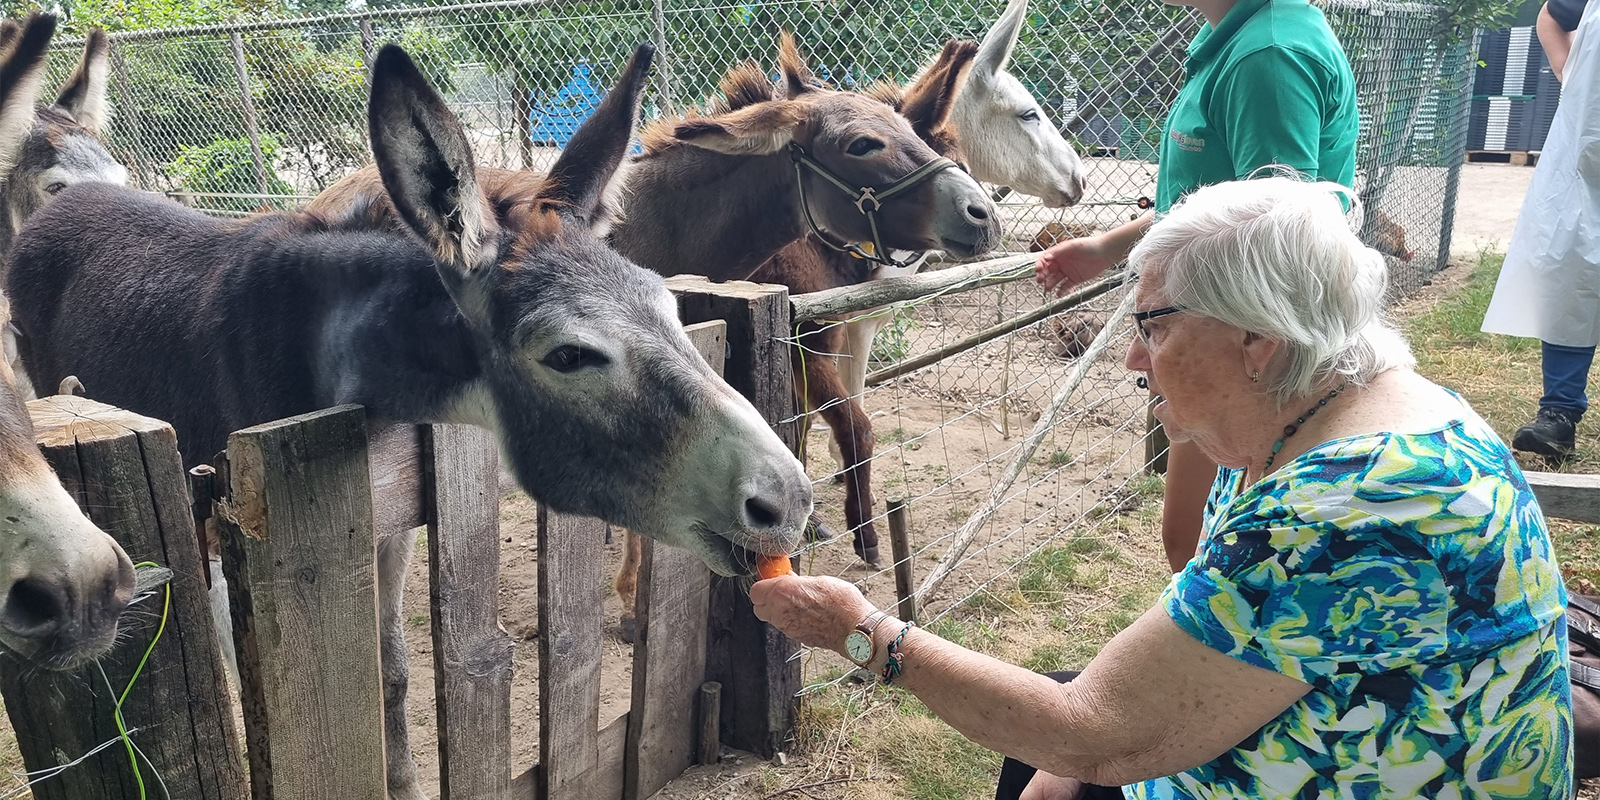 Kleine hartenwensen maken een groot verschil voor de bewoners met dementie, weet GVP Pieter. Zoals voor de bewoonster op de foto, die een ezel voert.